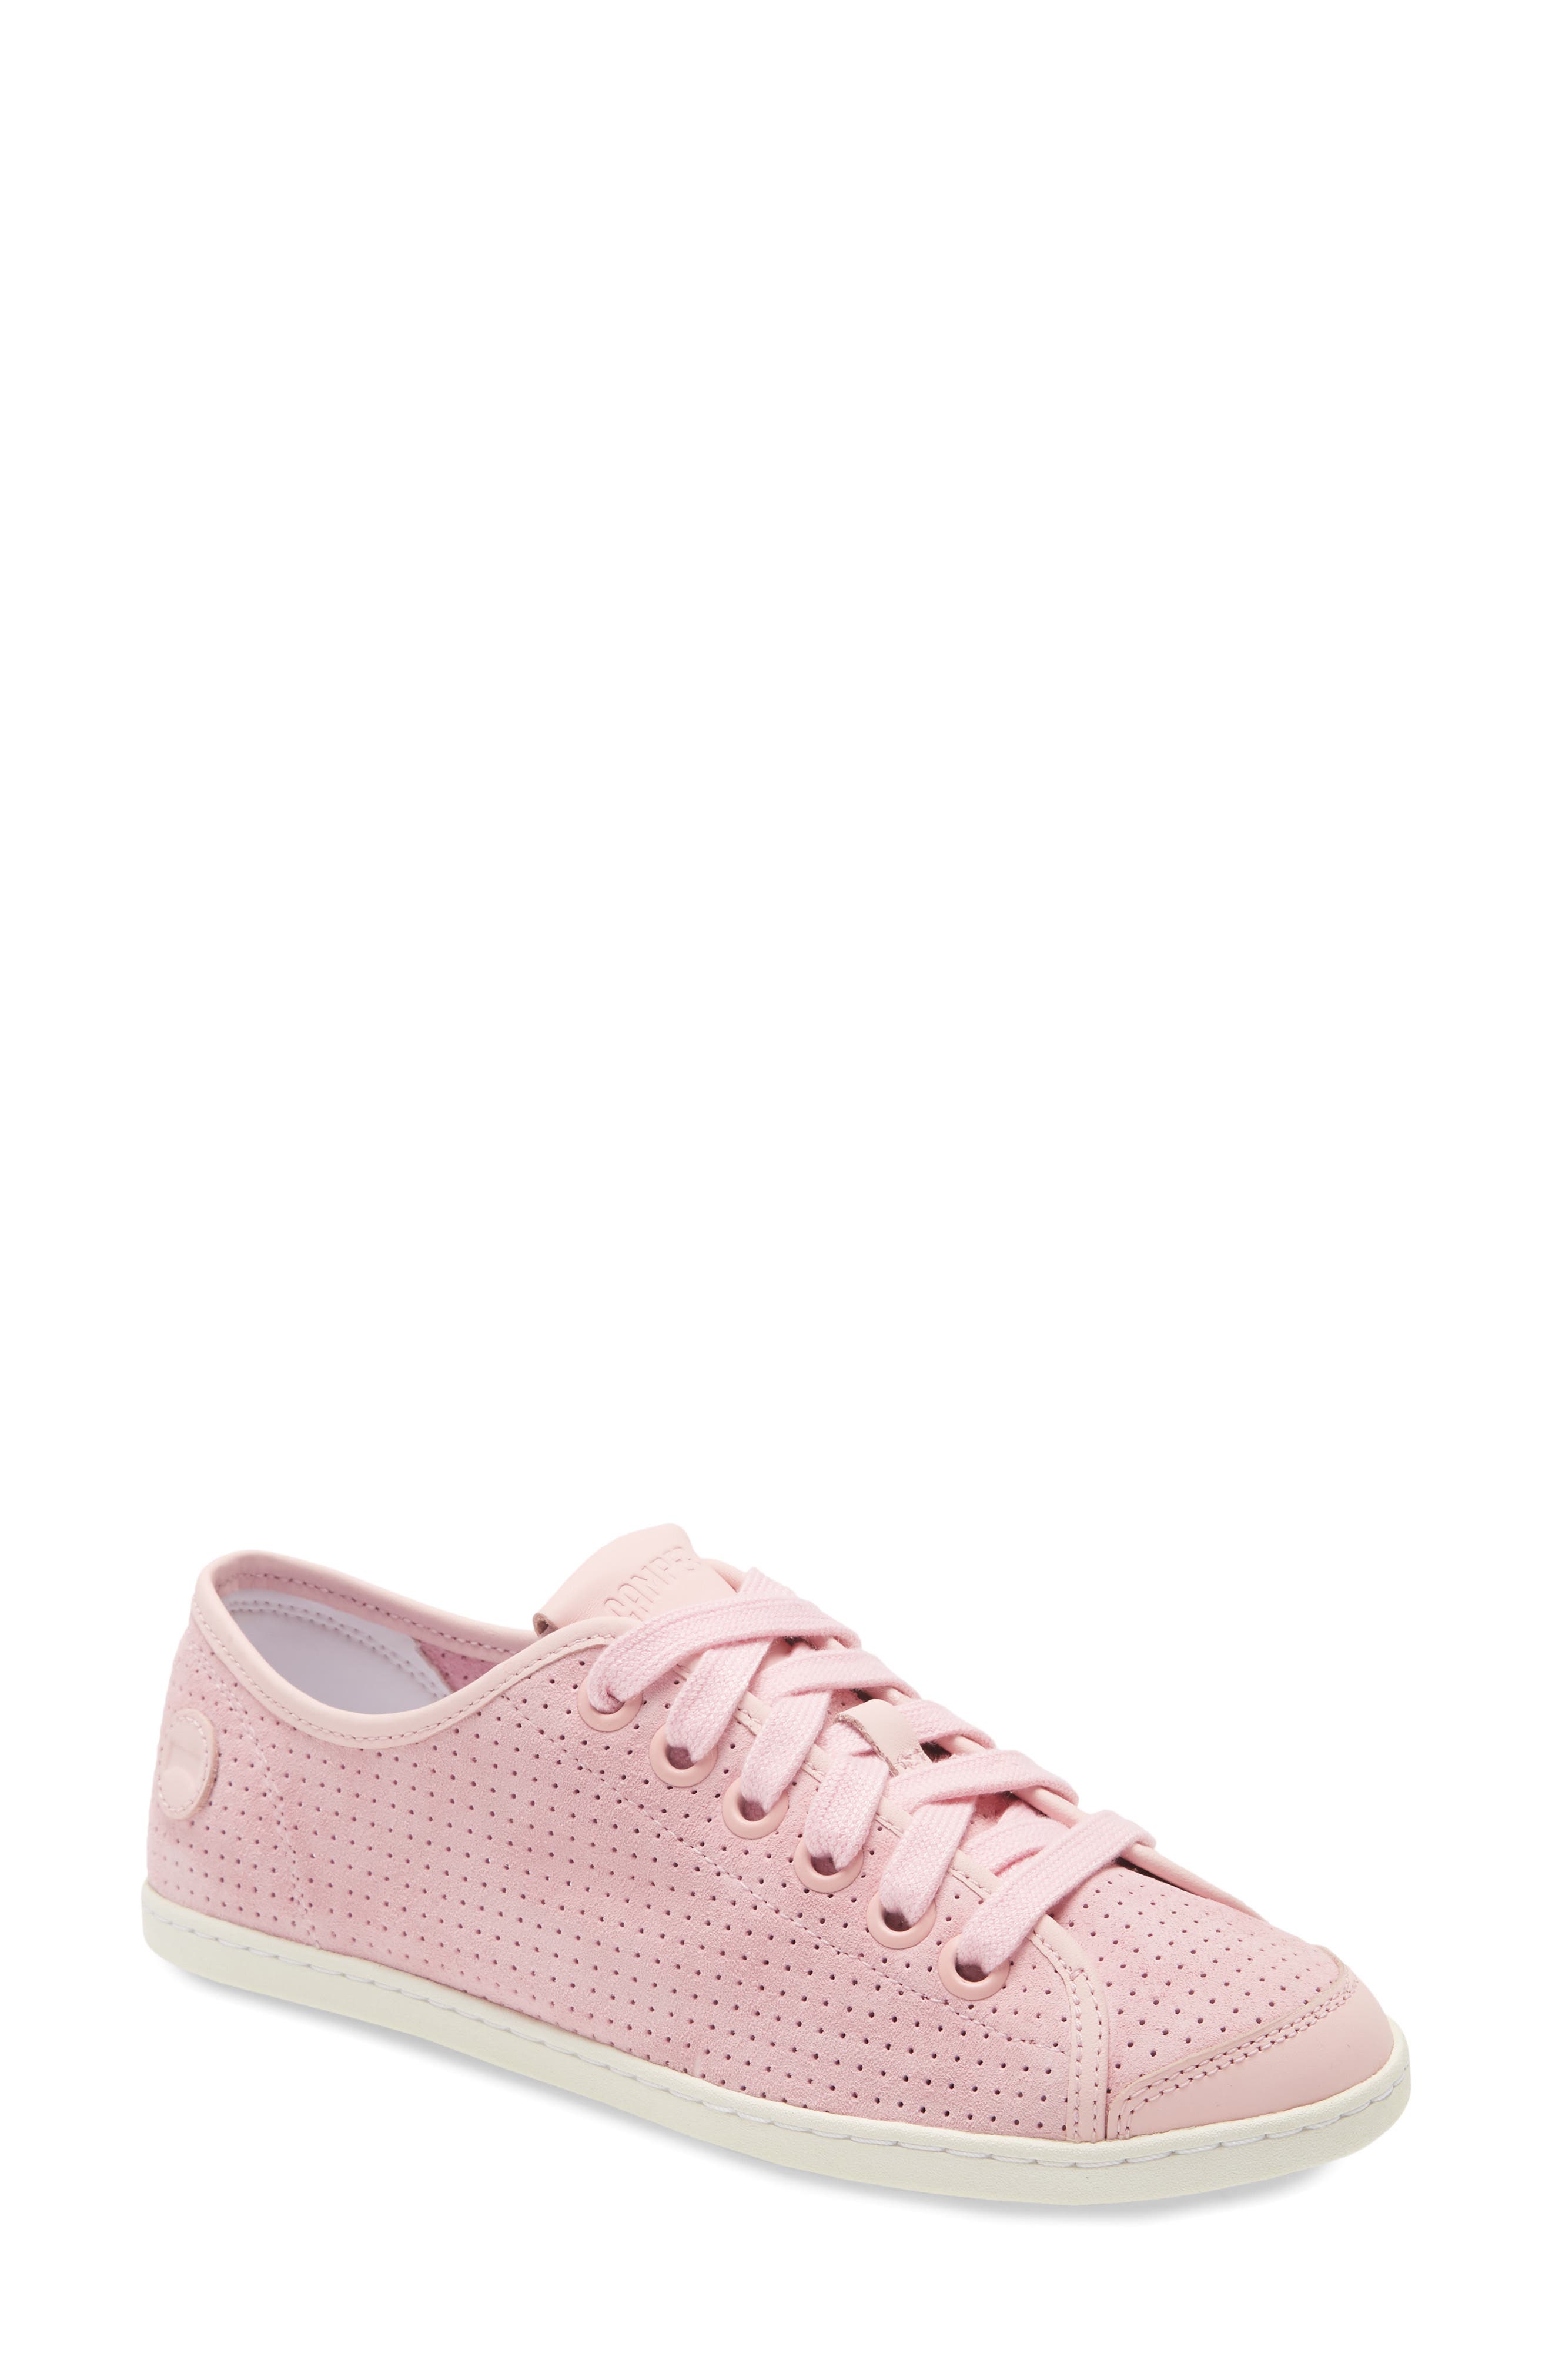 camper pink shoes